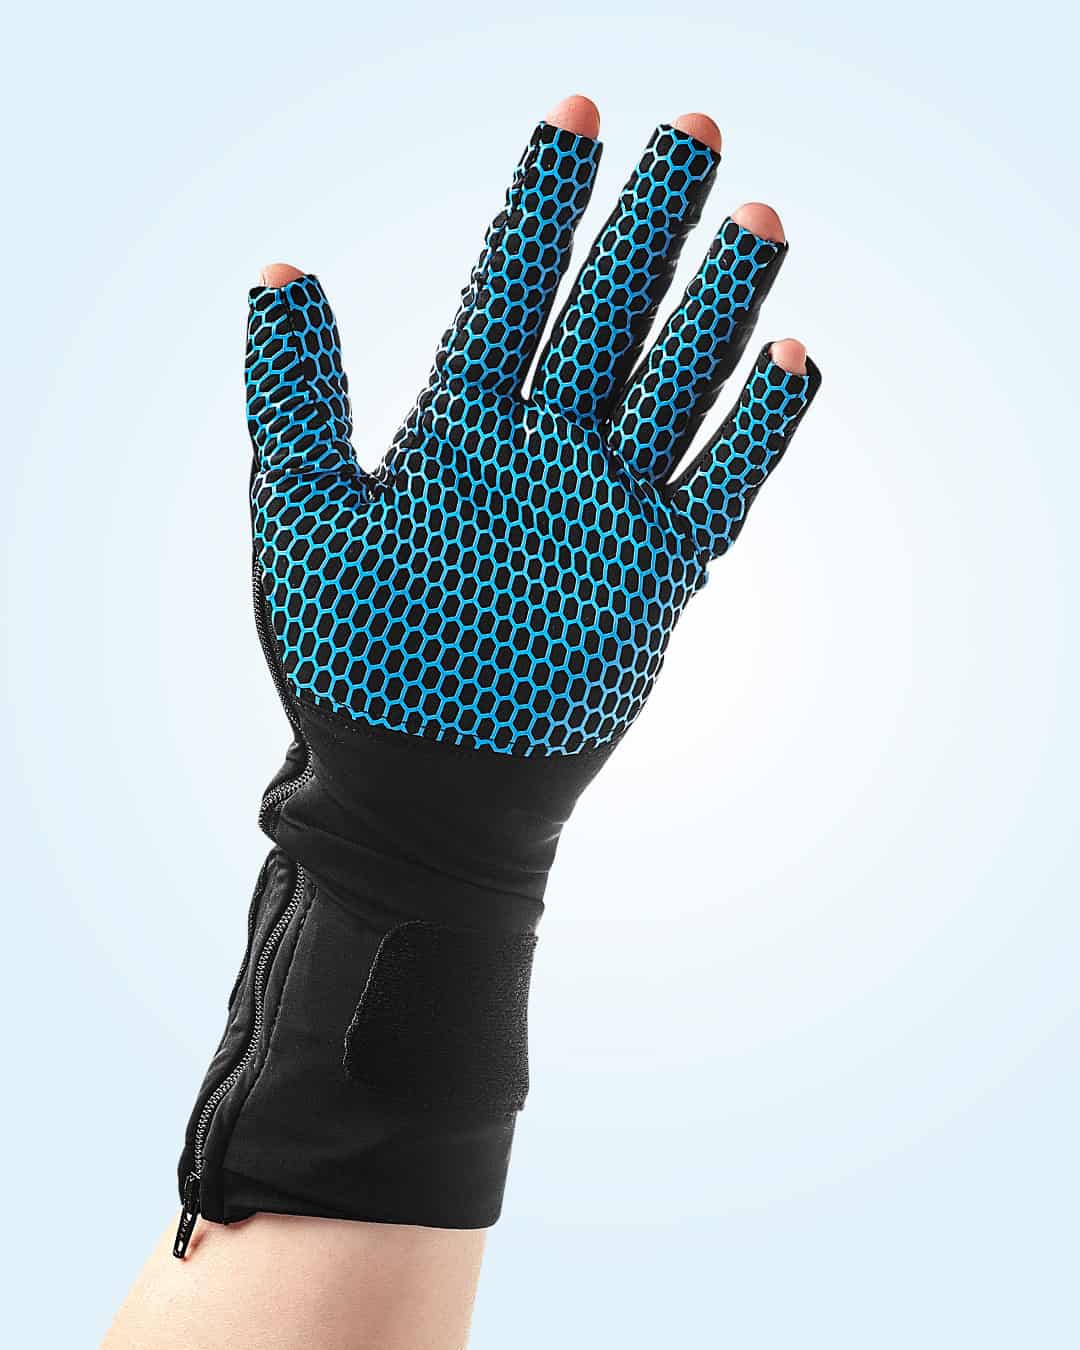 Fidelity Glove palm 4x5